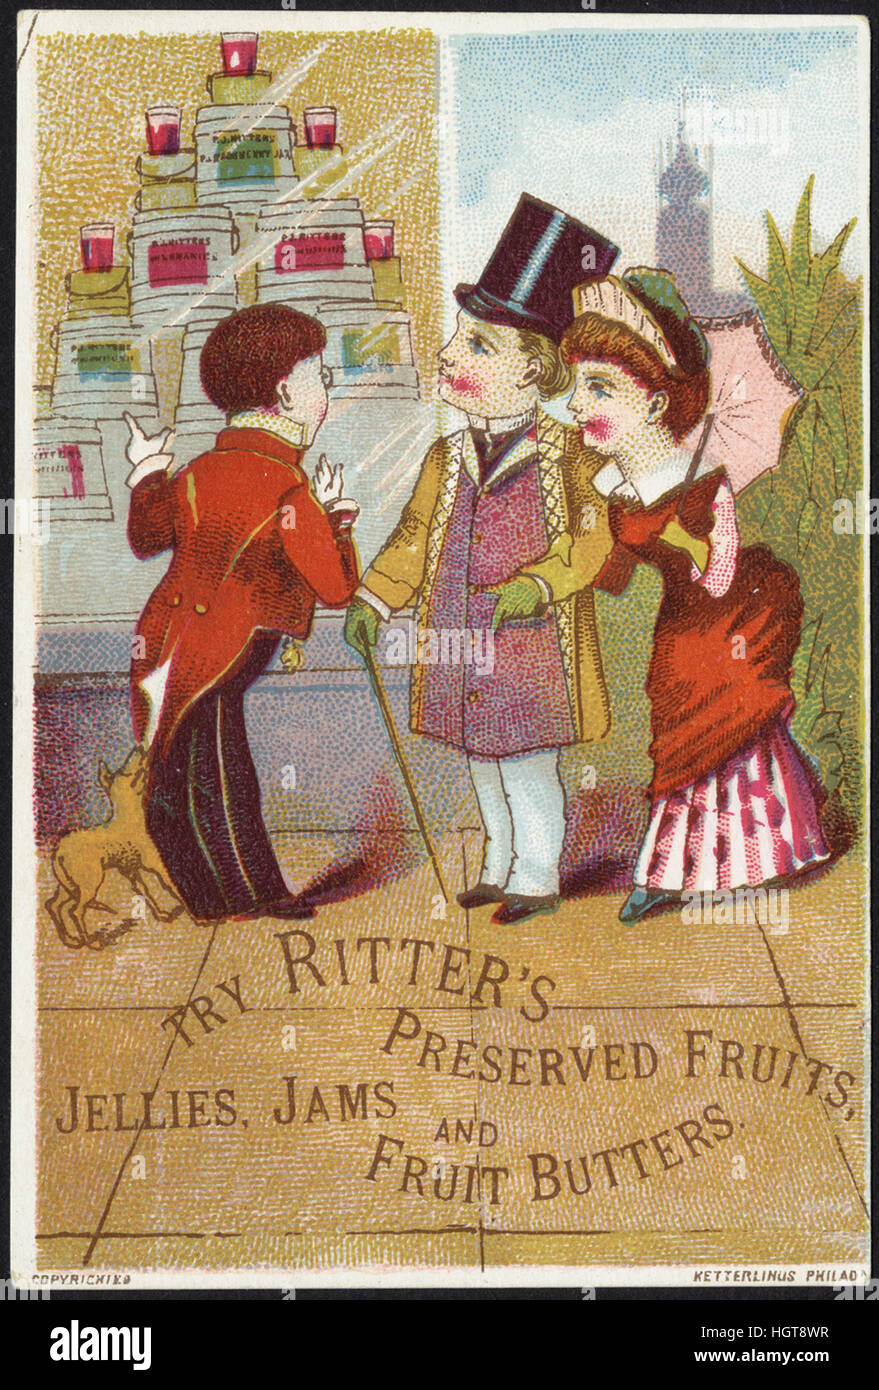 Intente Ritter de conservas de frutas, jaleas, mermeladas y frutas butters [frontal] - Tarjeta de comercio de alimentos Foto de stock